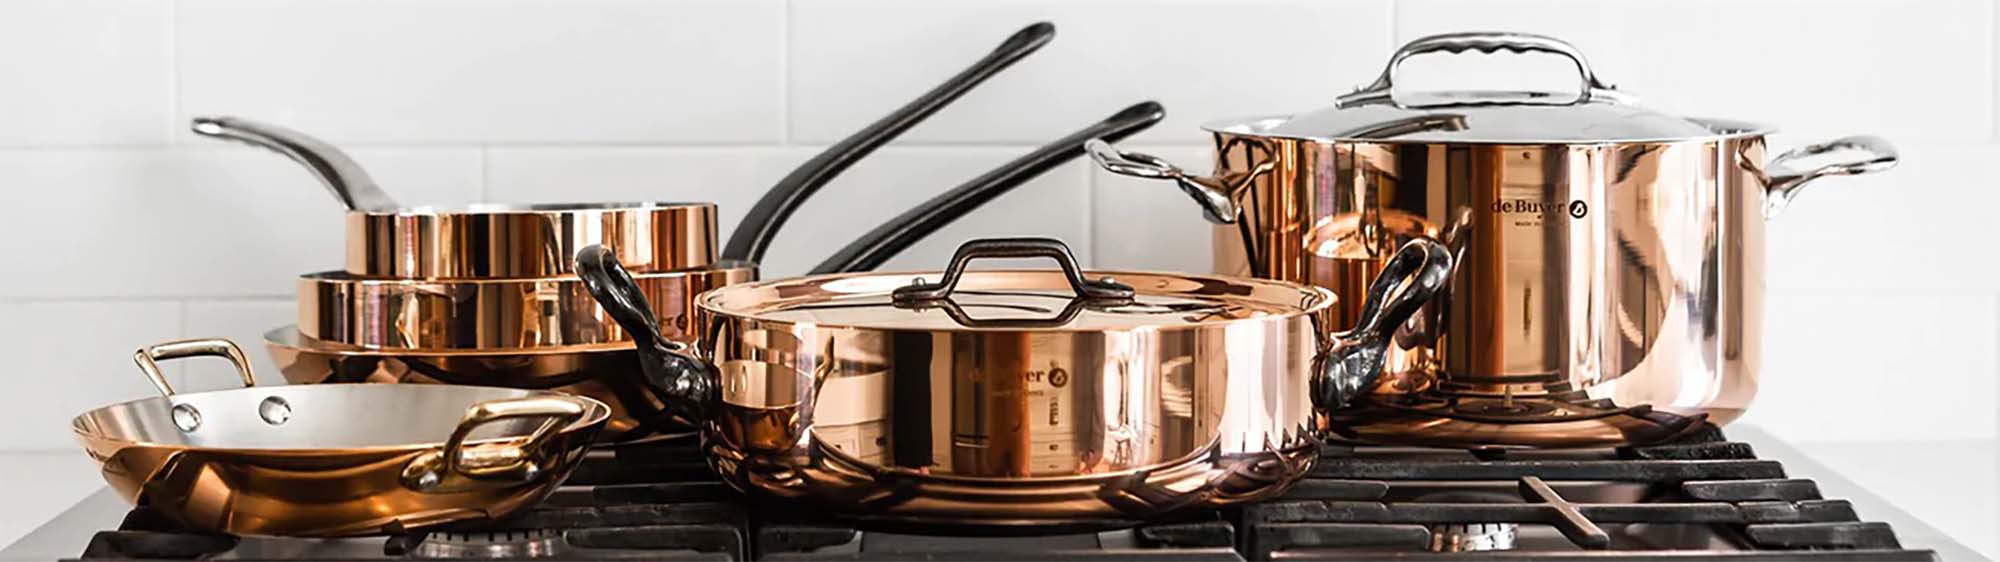 INOCUIVRE Copper Cookware | de Buyer USA